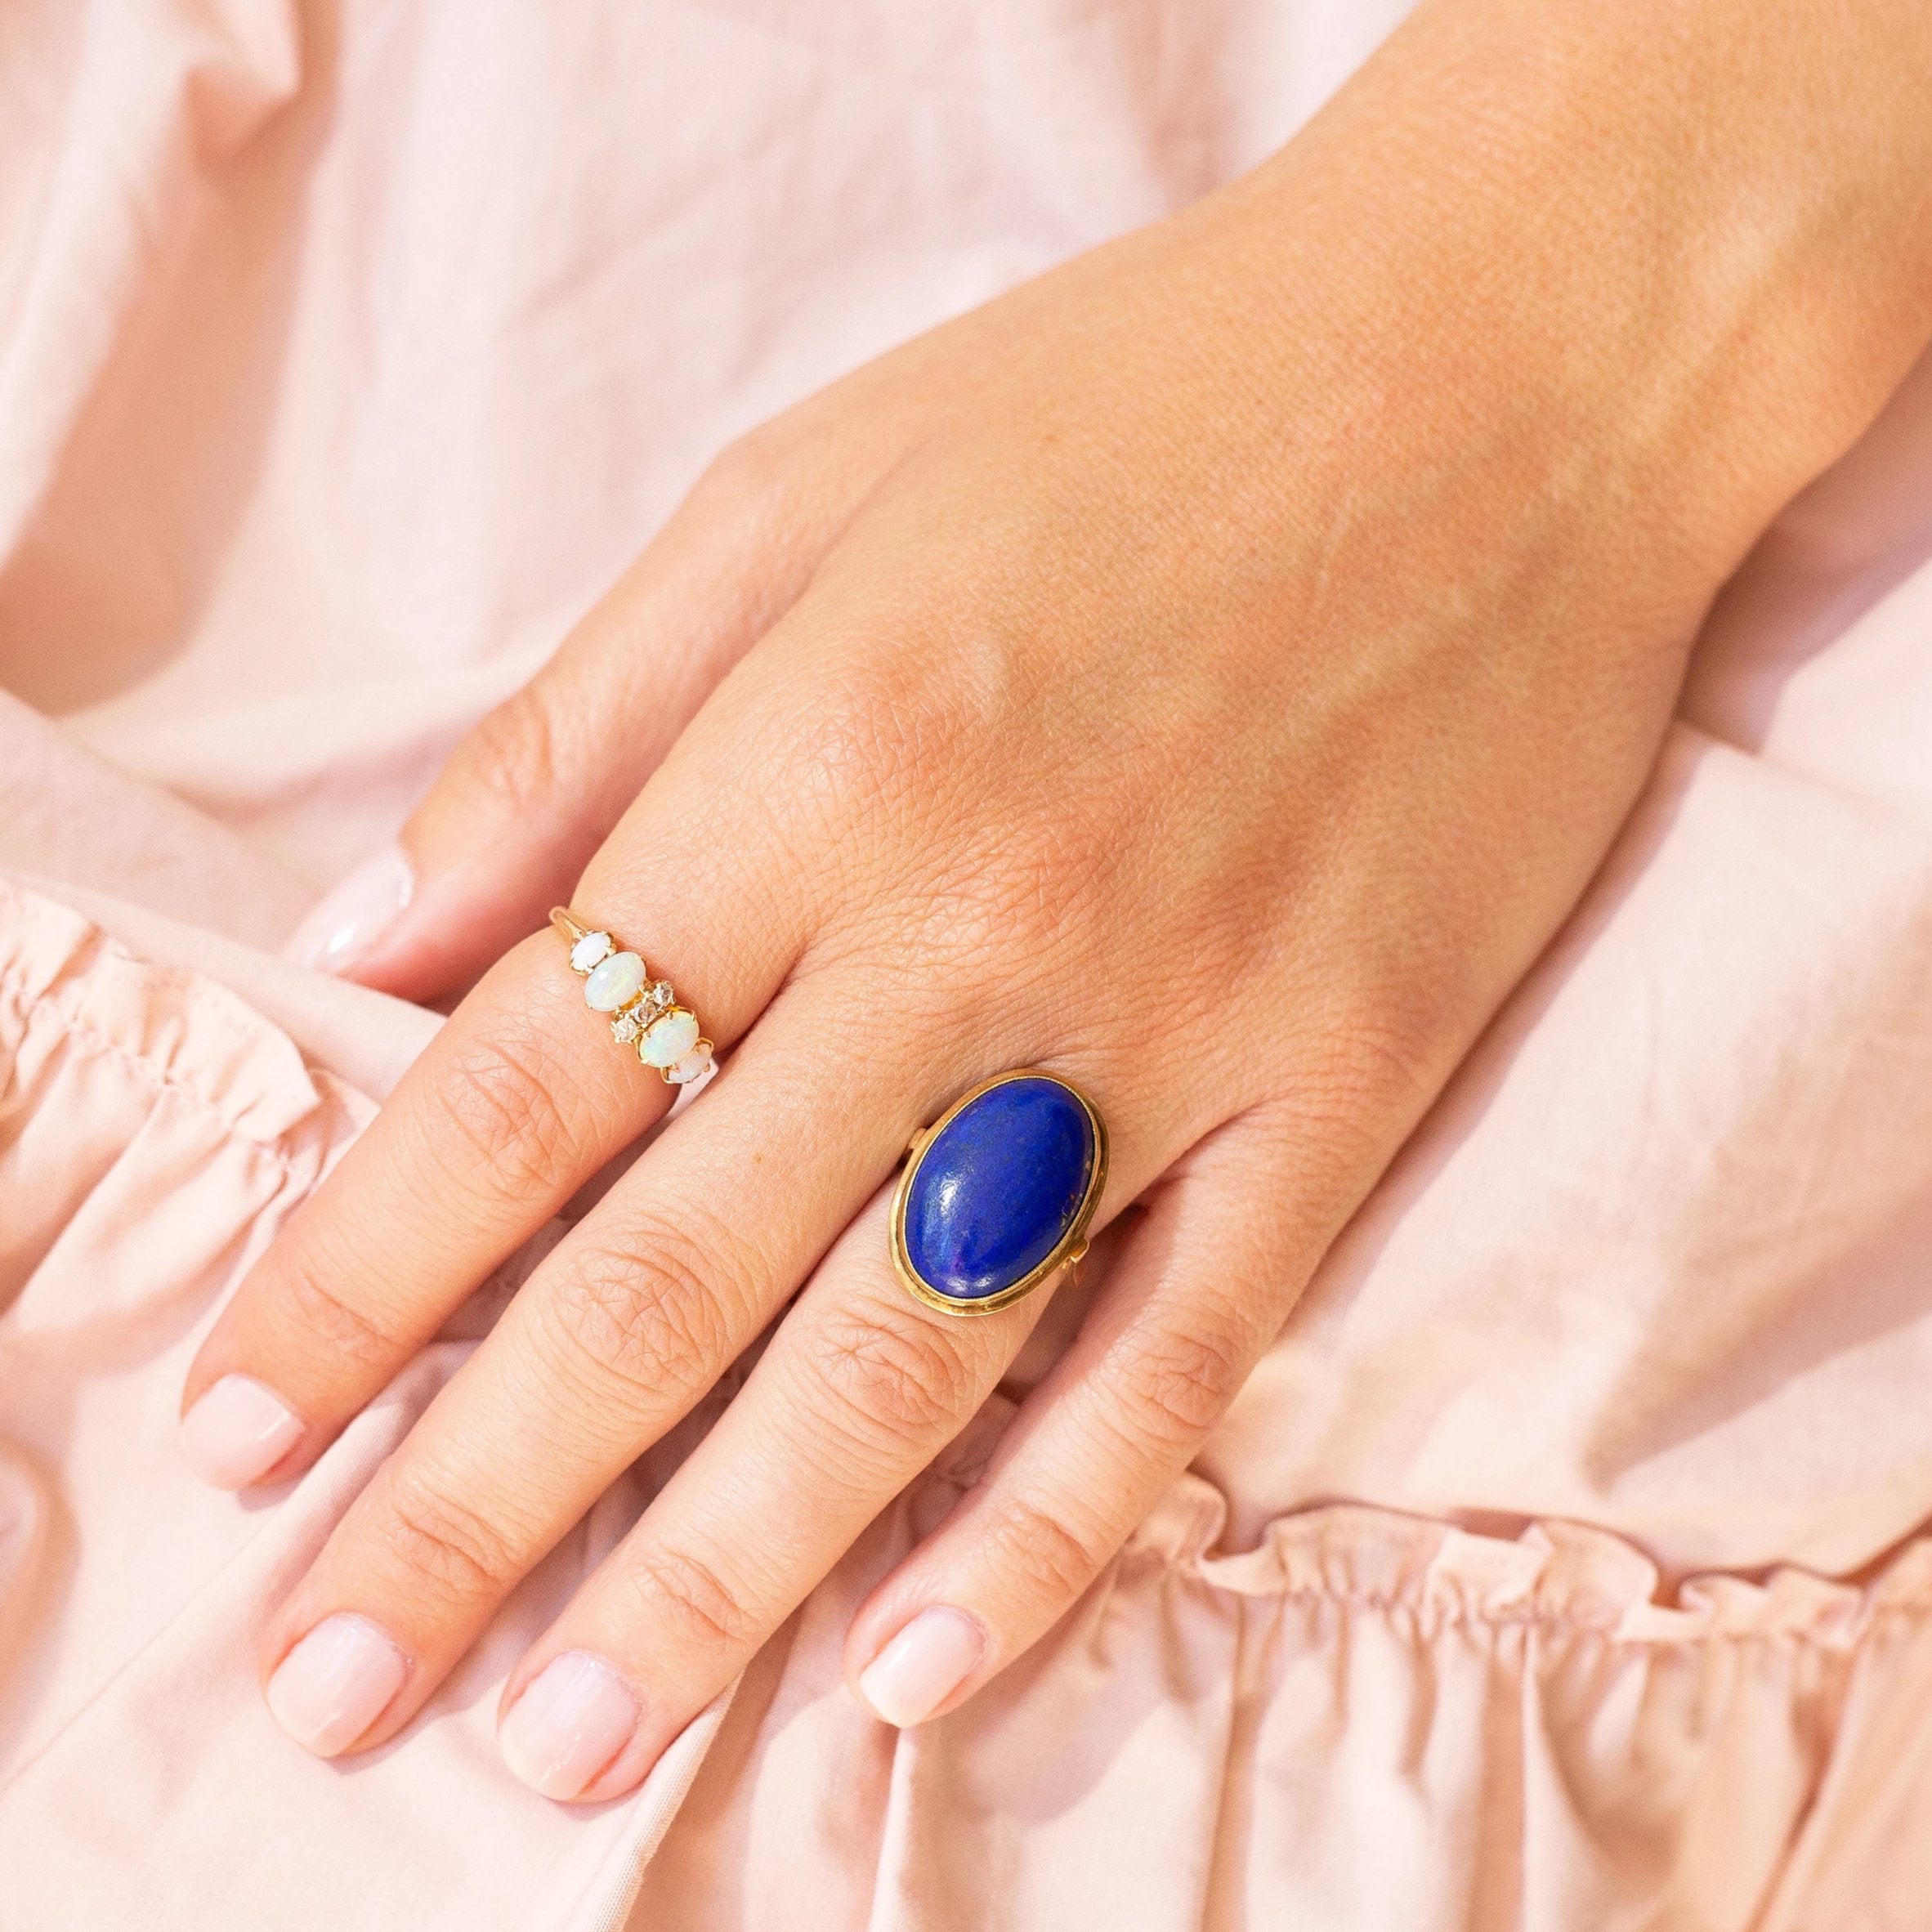 Lapis Lazuli and 14k Gold Ring